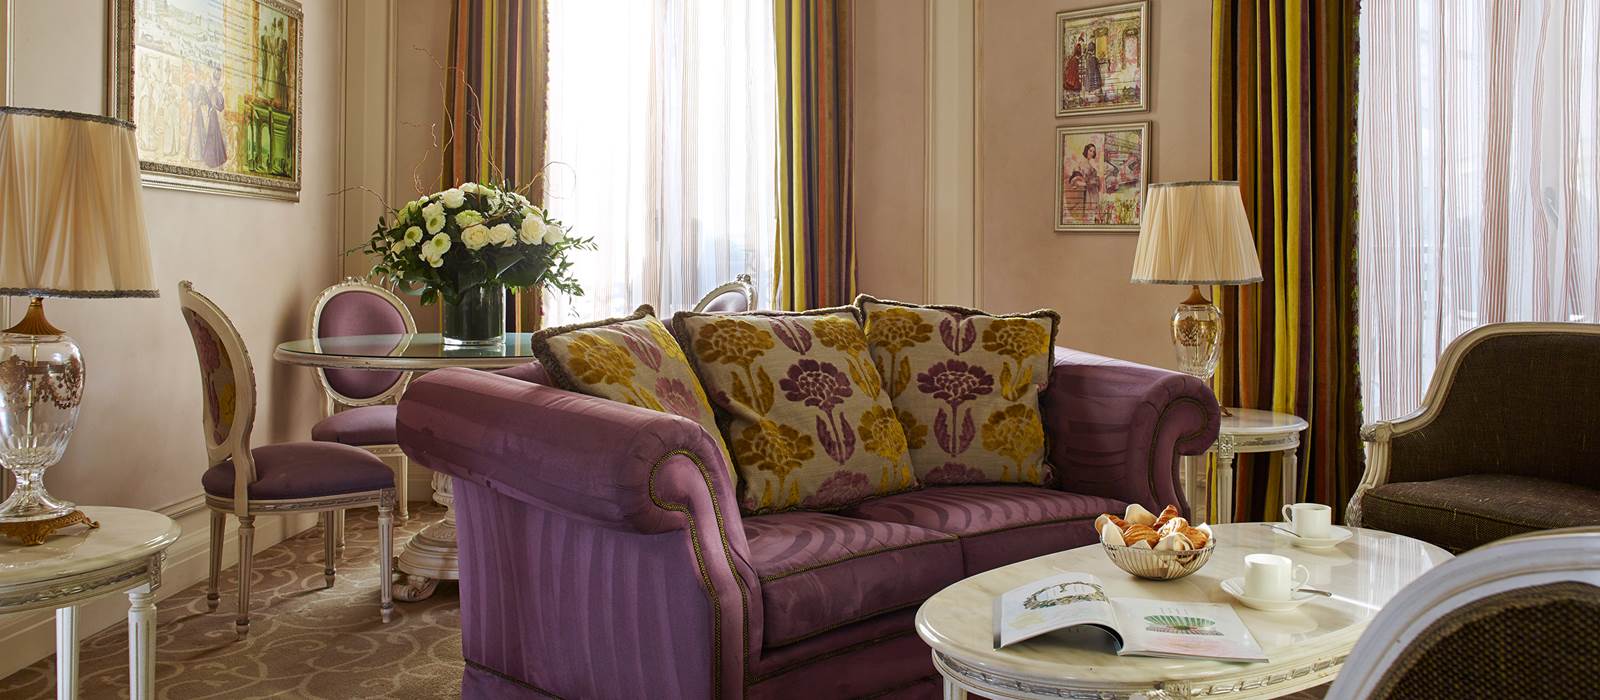 Corner Suite Living Room Hotel Balzac